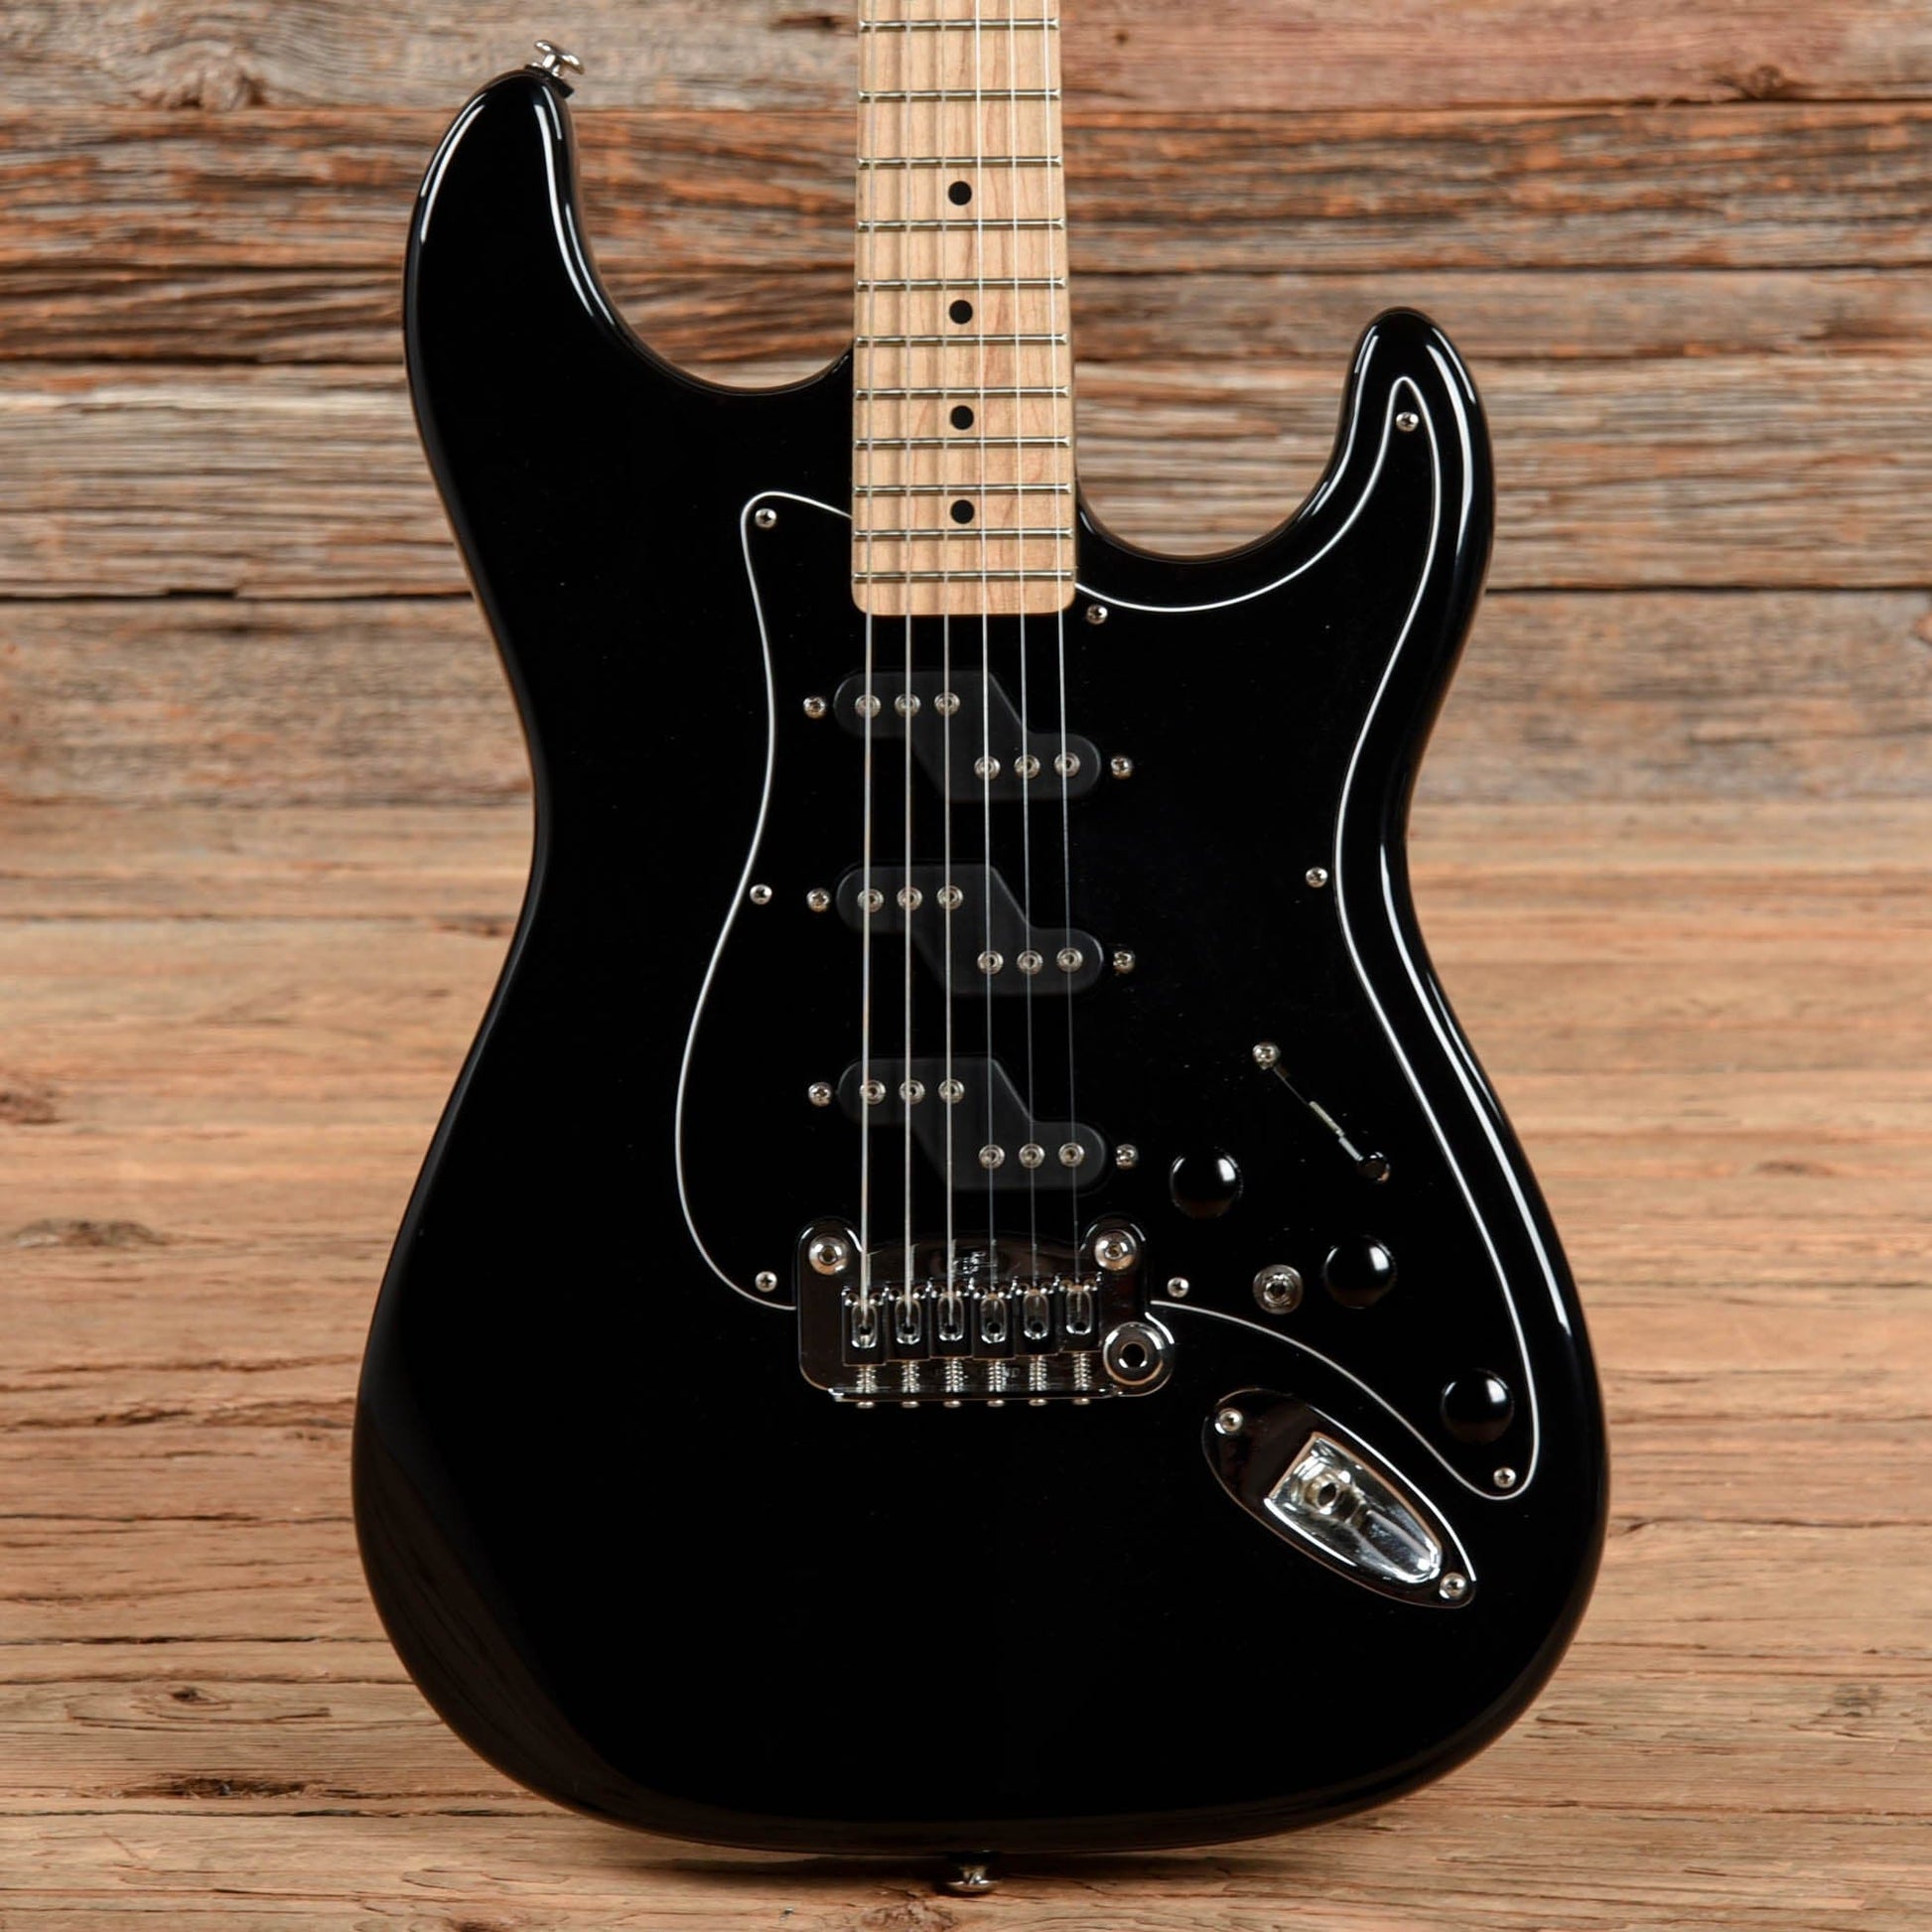 G&L USA Comanche Black Electric Guitars / Solid Body